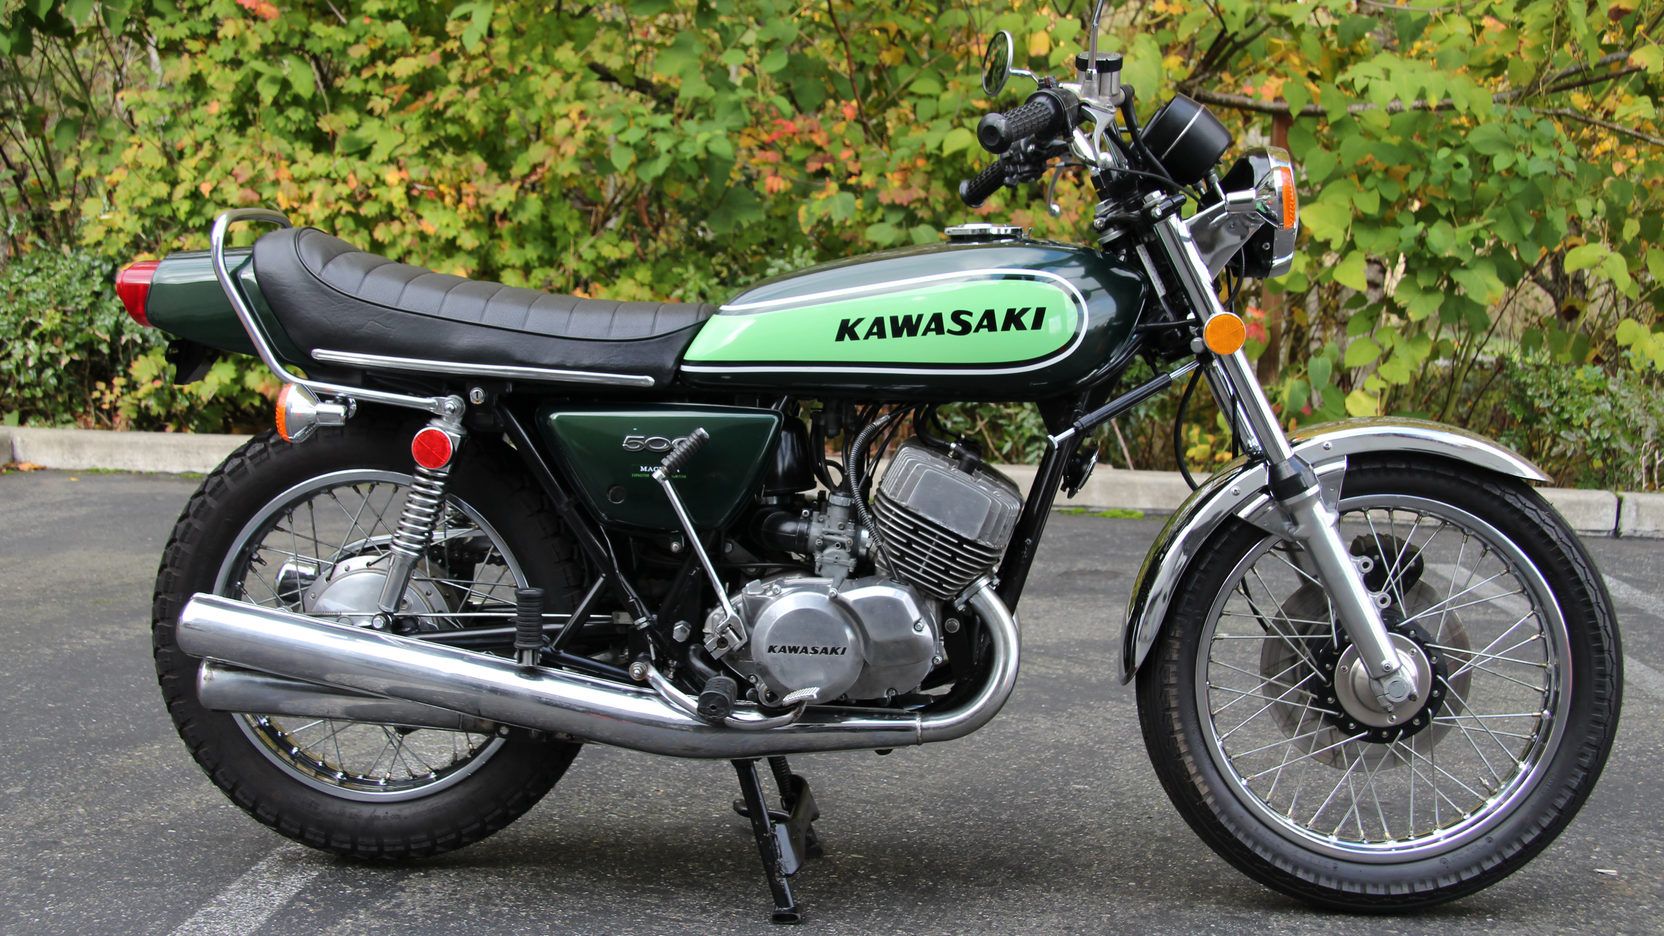 Kawasaki 500 H1 at a parking garage